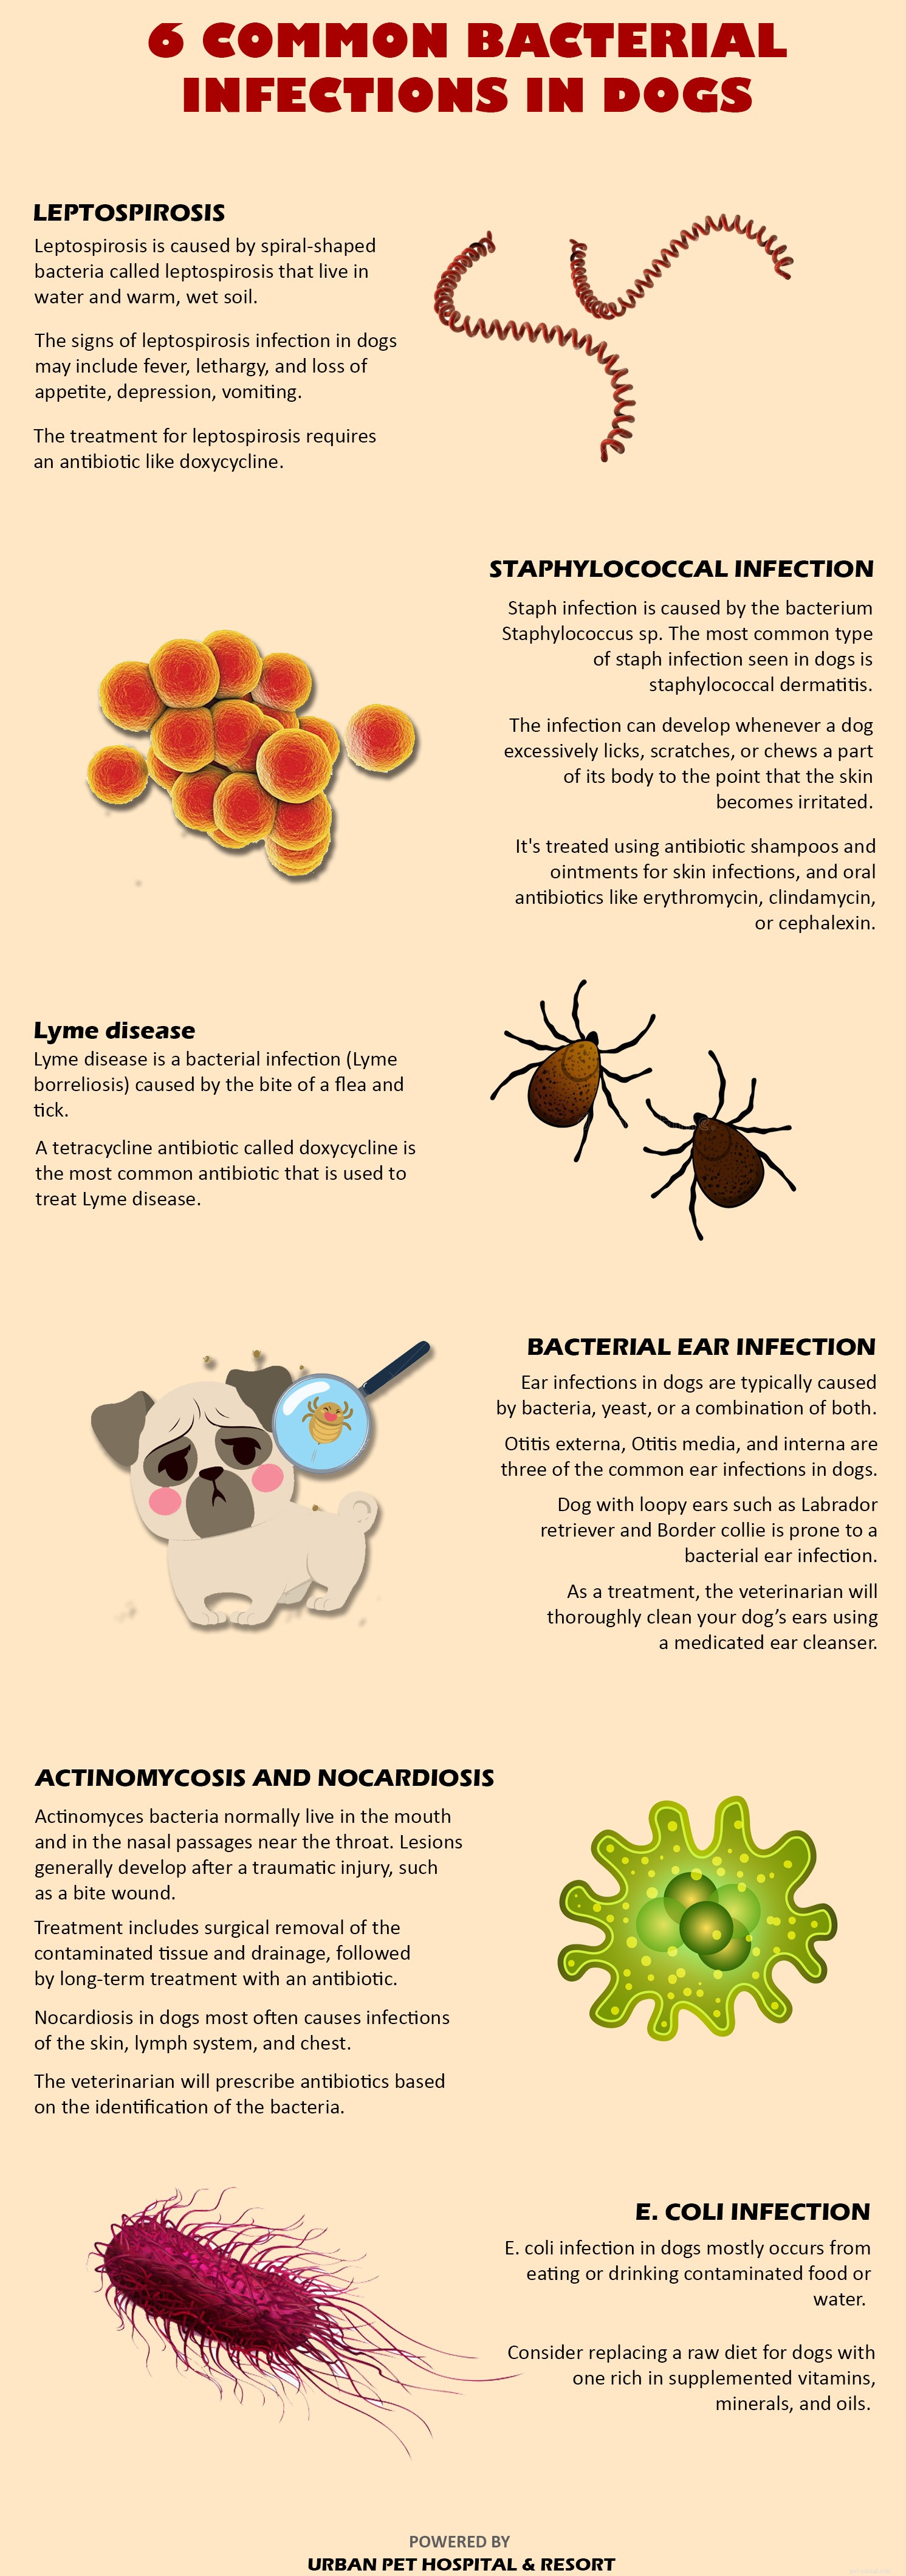 Como tratar a infecção bacteriana em seu animal de estimação?